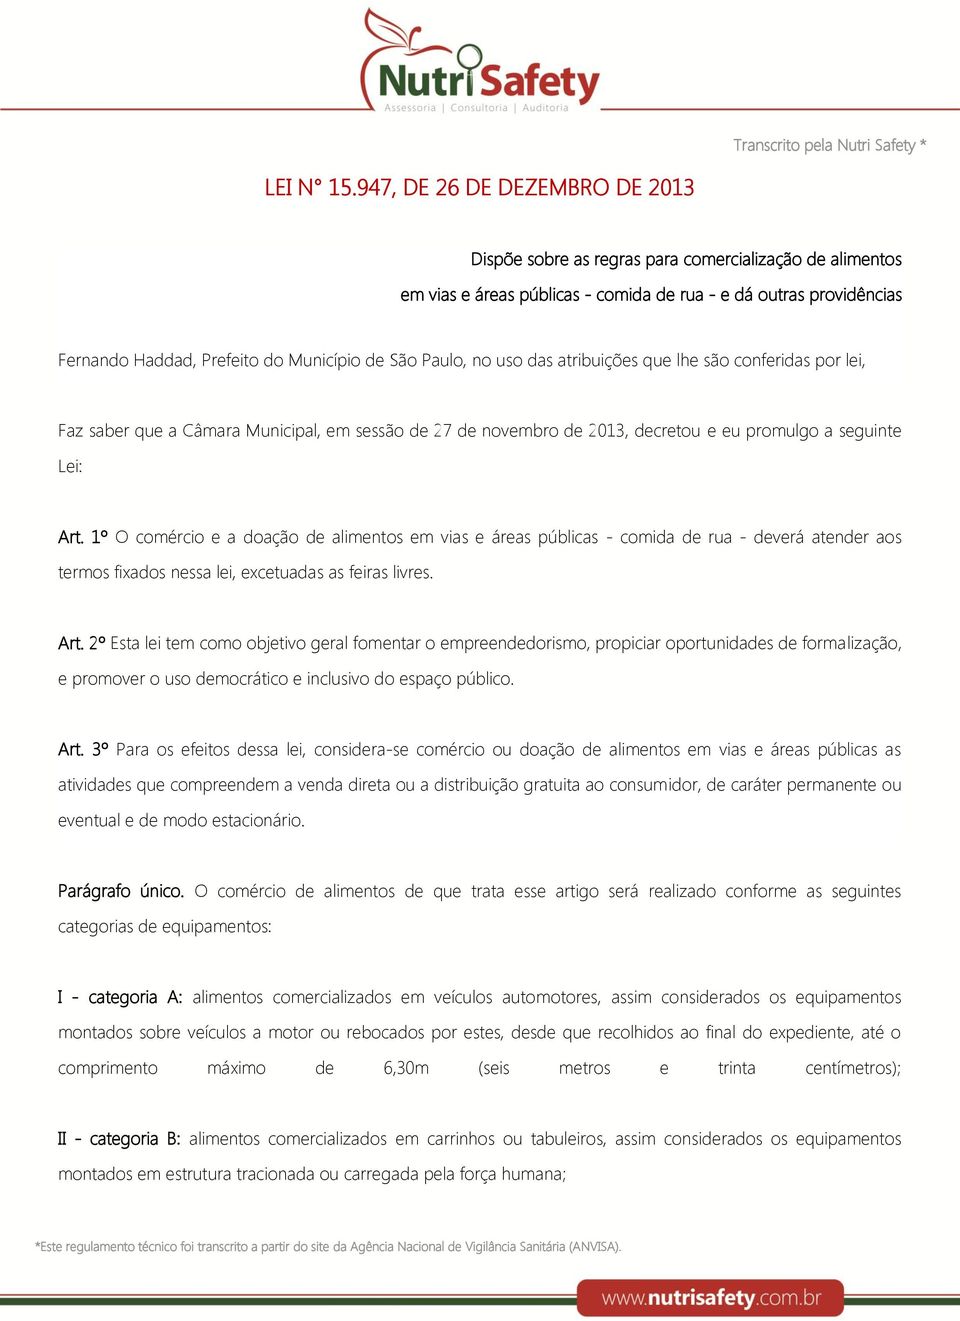 São Paulo, no uso das atribuições que lhe são conferidas por lei, Faz saber que a Câmara Municipal, em sessão de 27 de novembro de 2013, decretou e eu promulgo a seguinte Lei: Art.